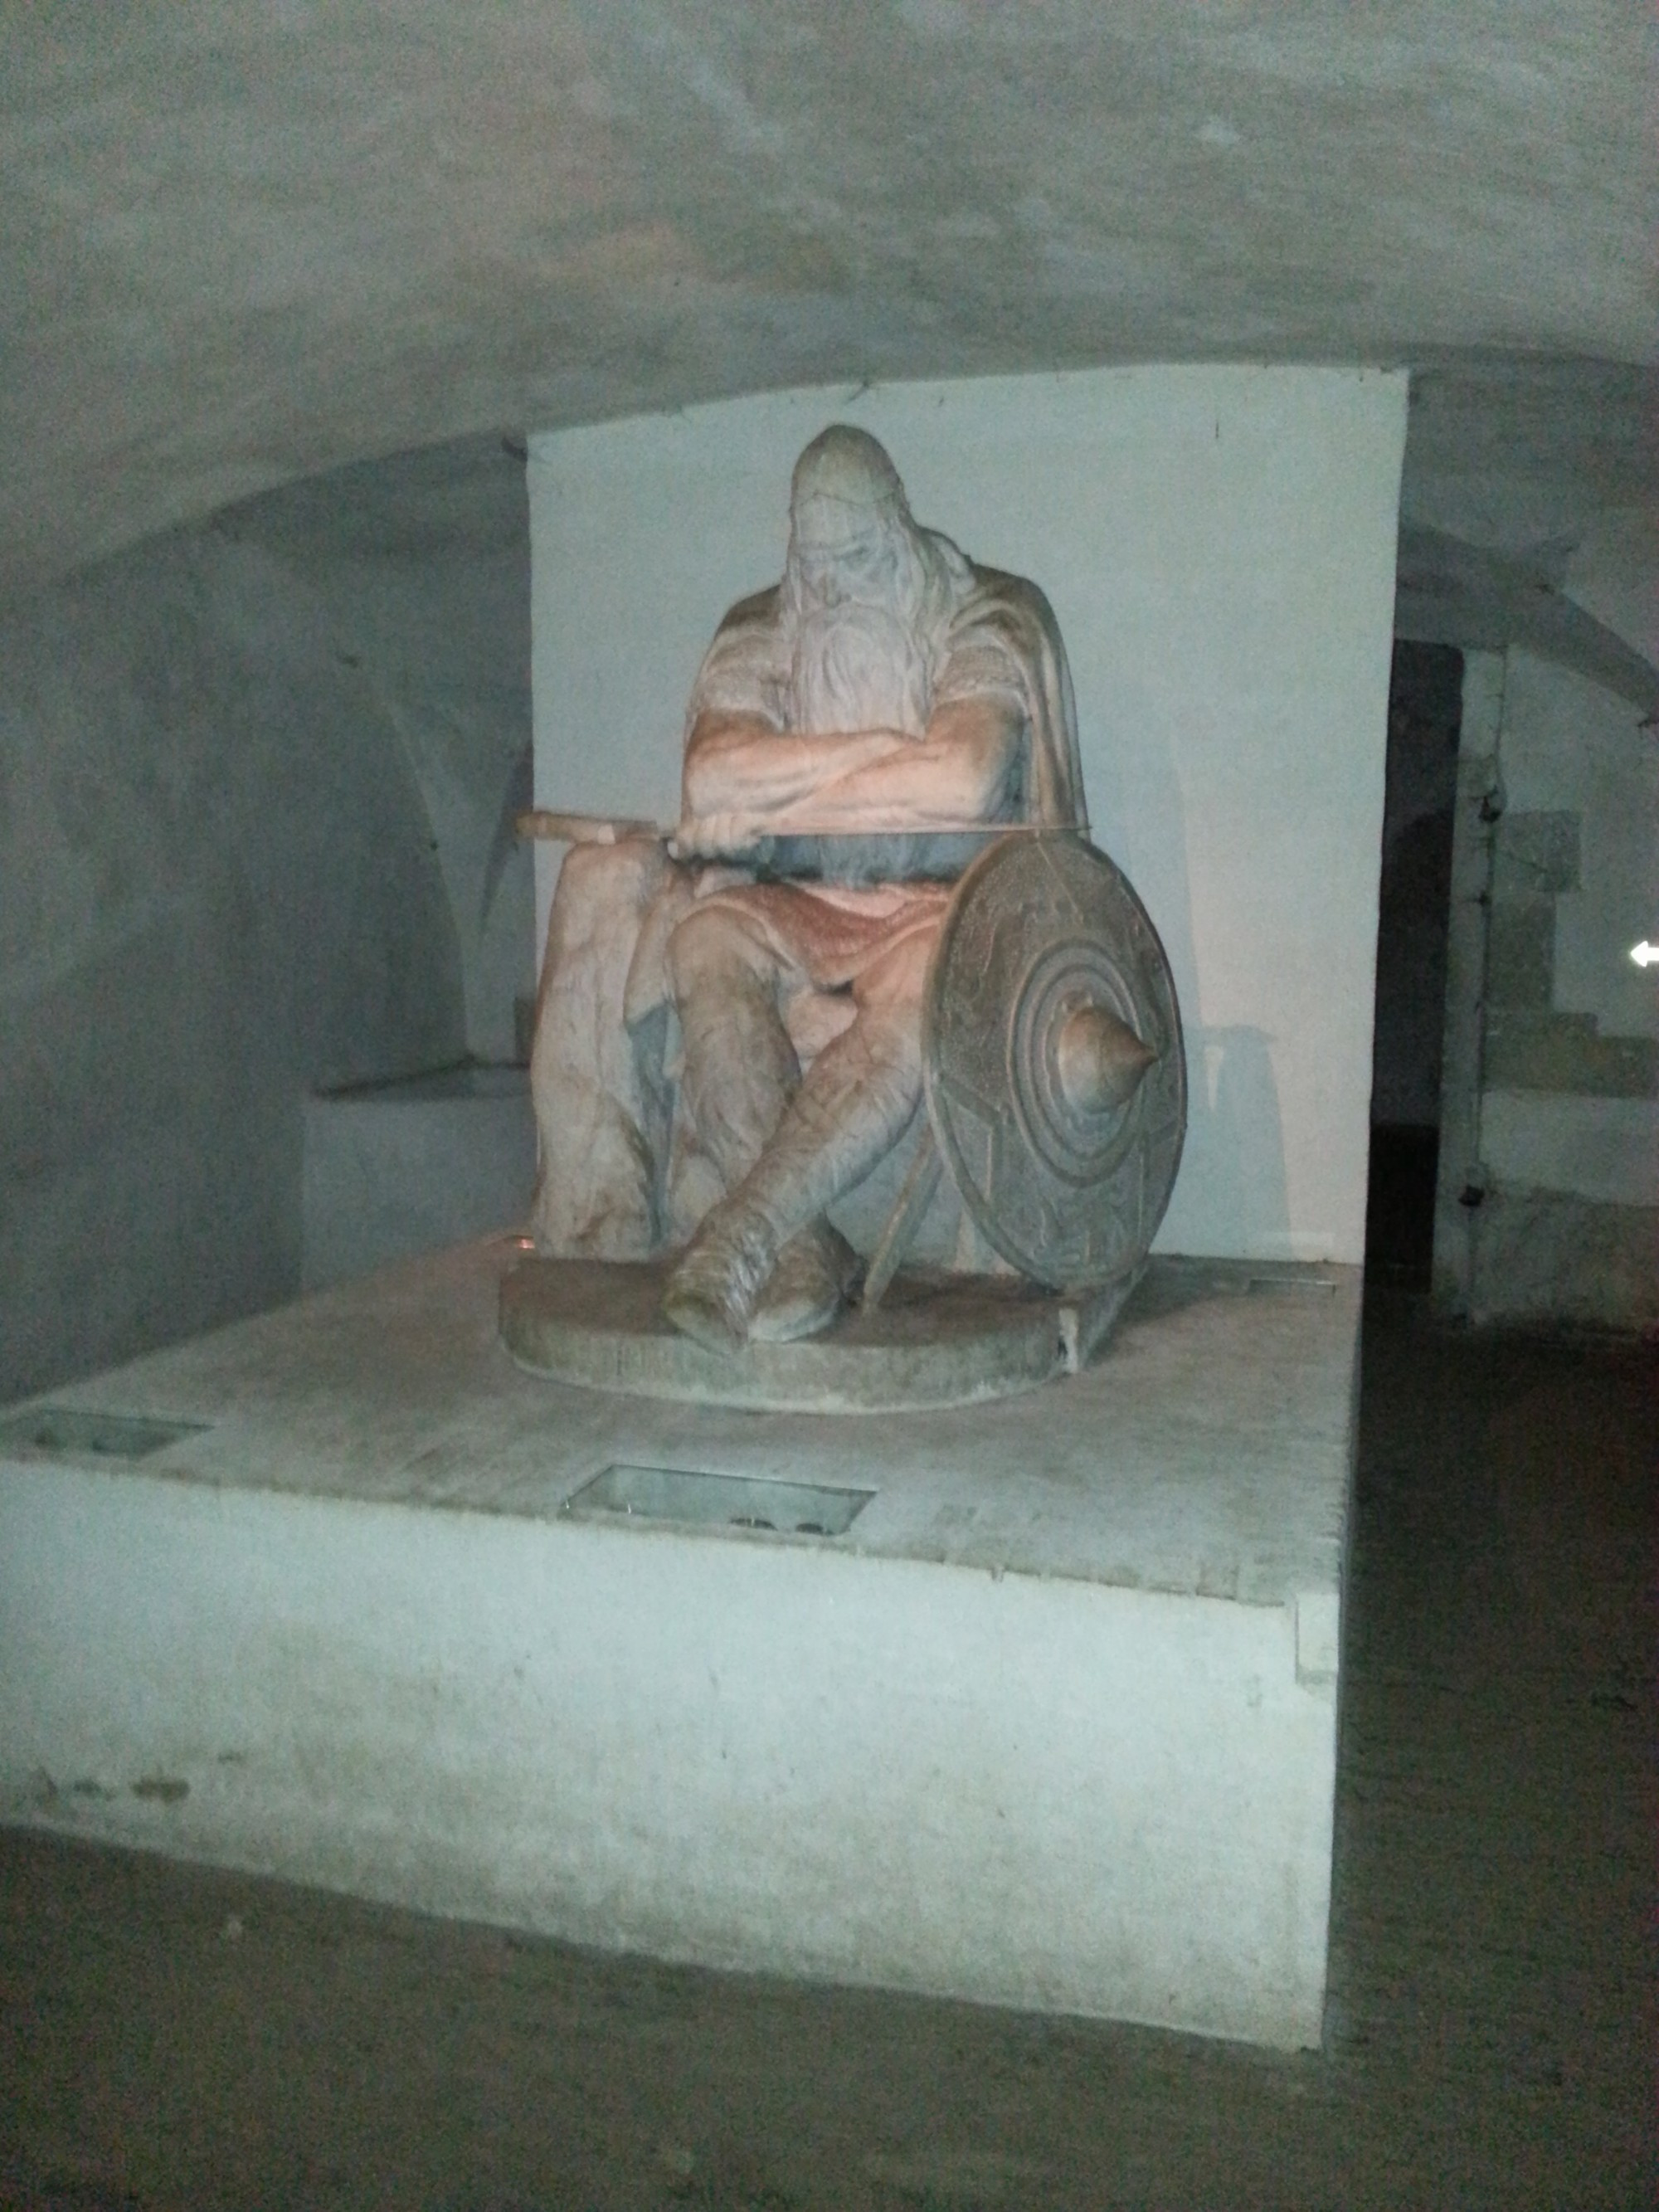 Хельсингёр. Замок Кронборг. Подземелье. Статуя Хольгер Данске. (14.07.2013)